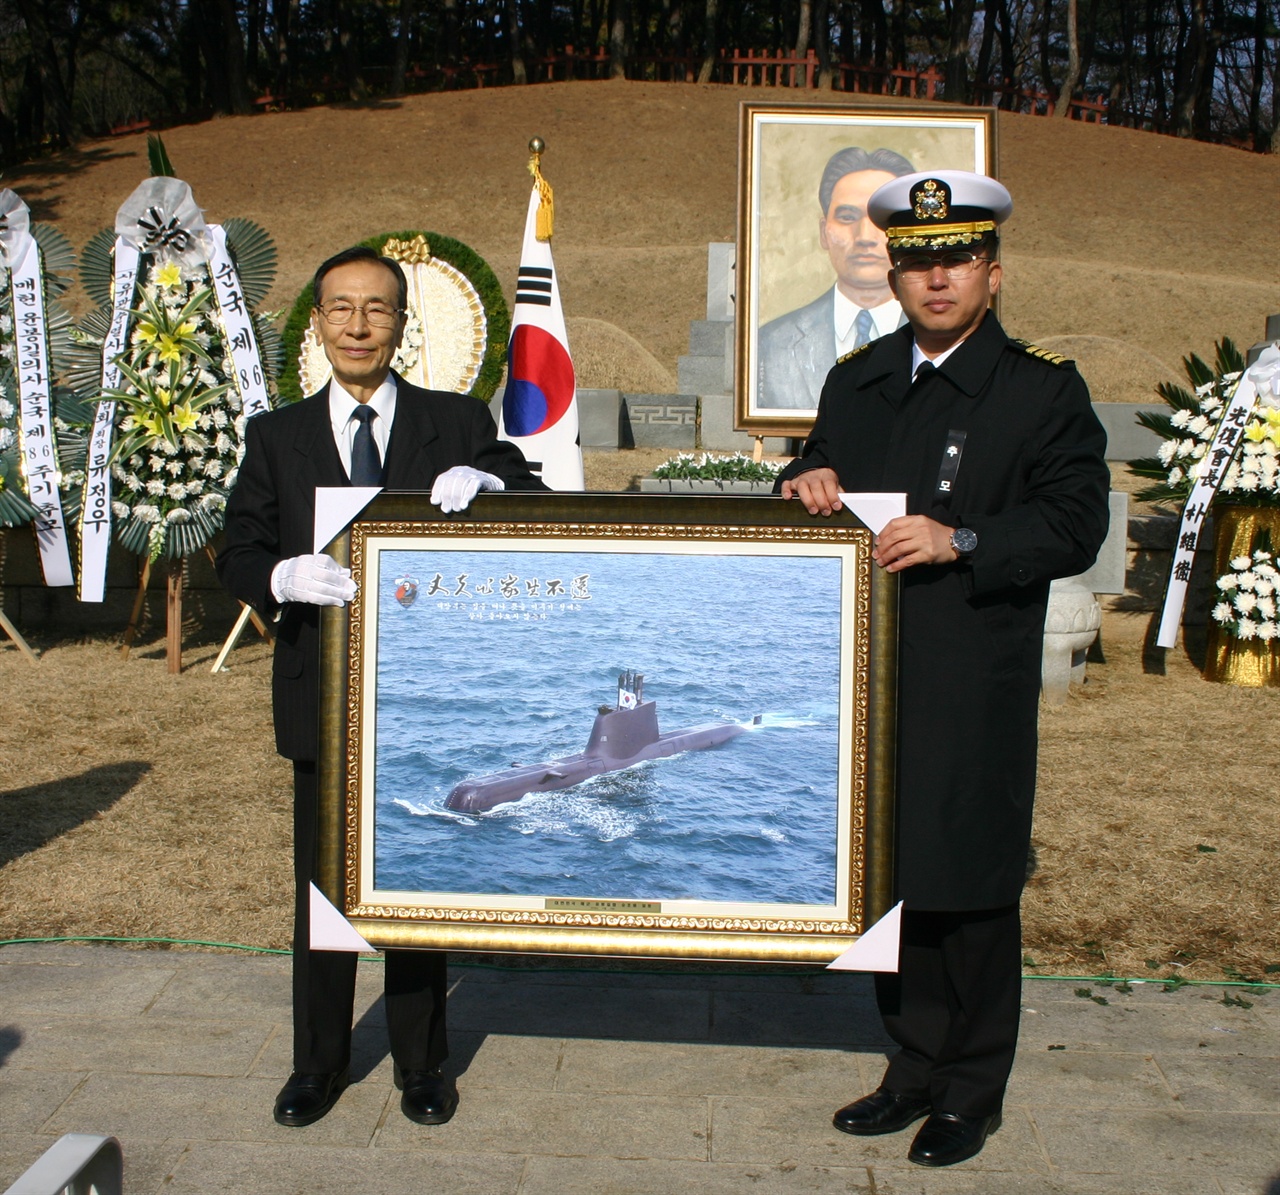 윤봉길함 함장이 윤봉길잠수함 사진을 황길수 기념사업회장에게 전하고 있다.